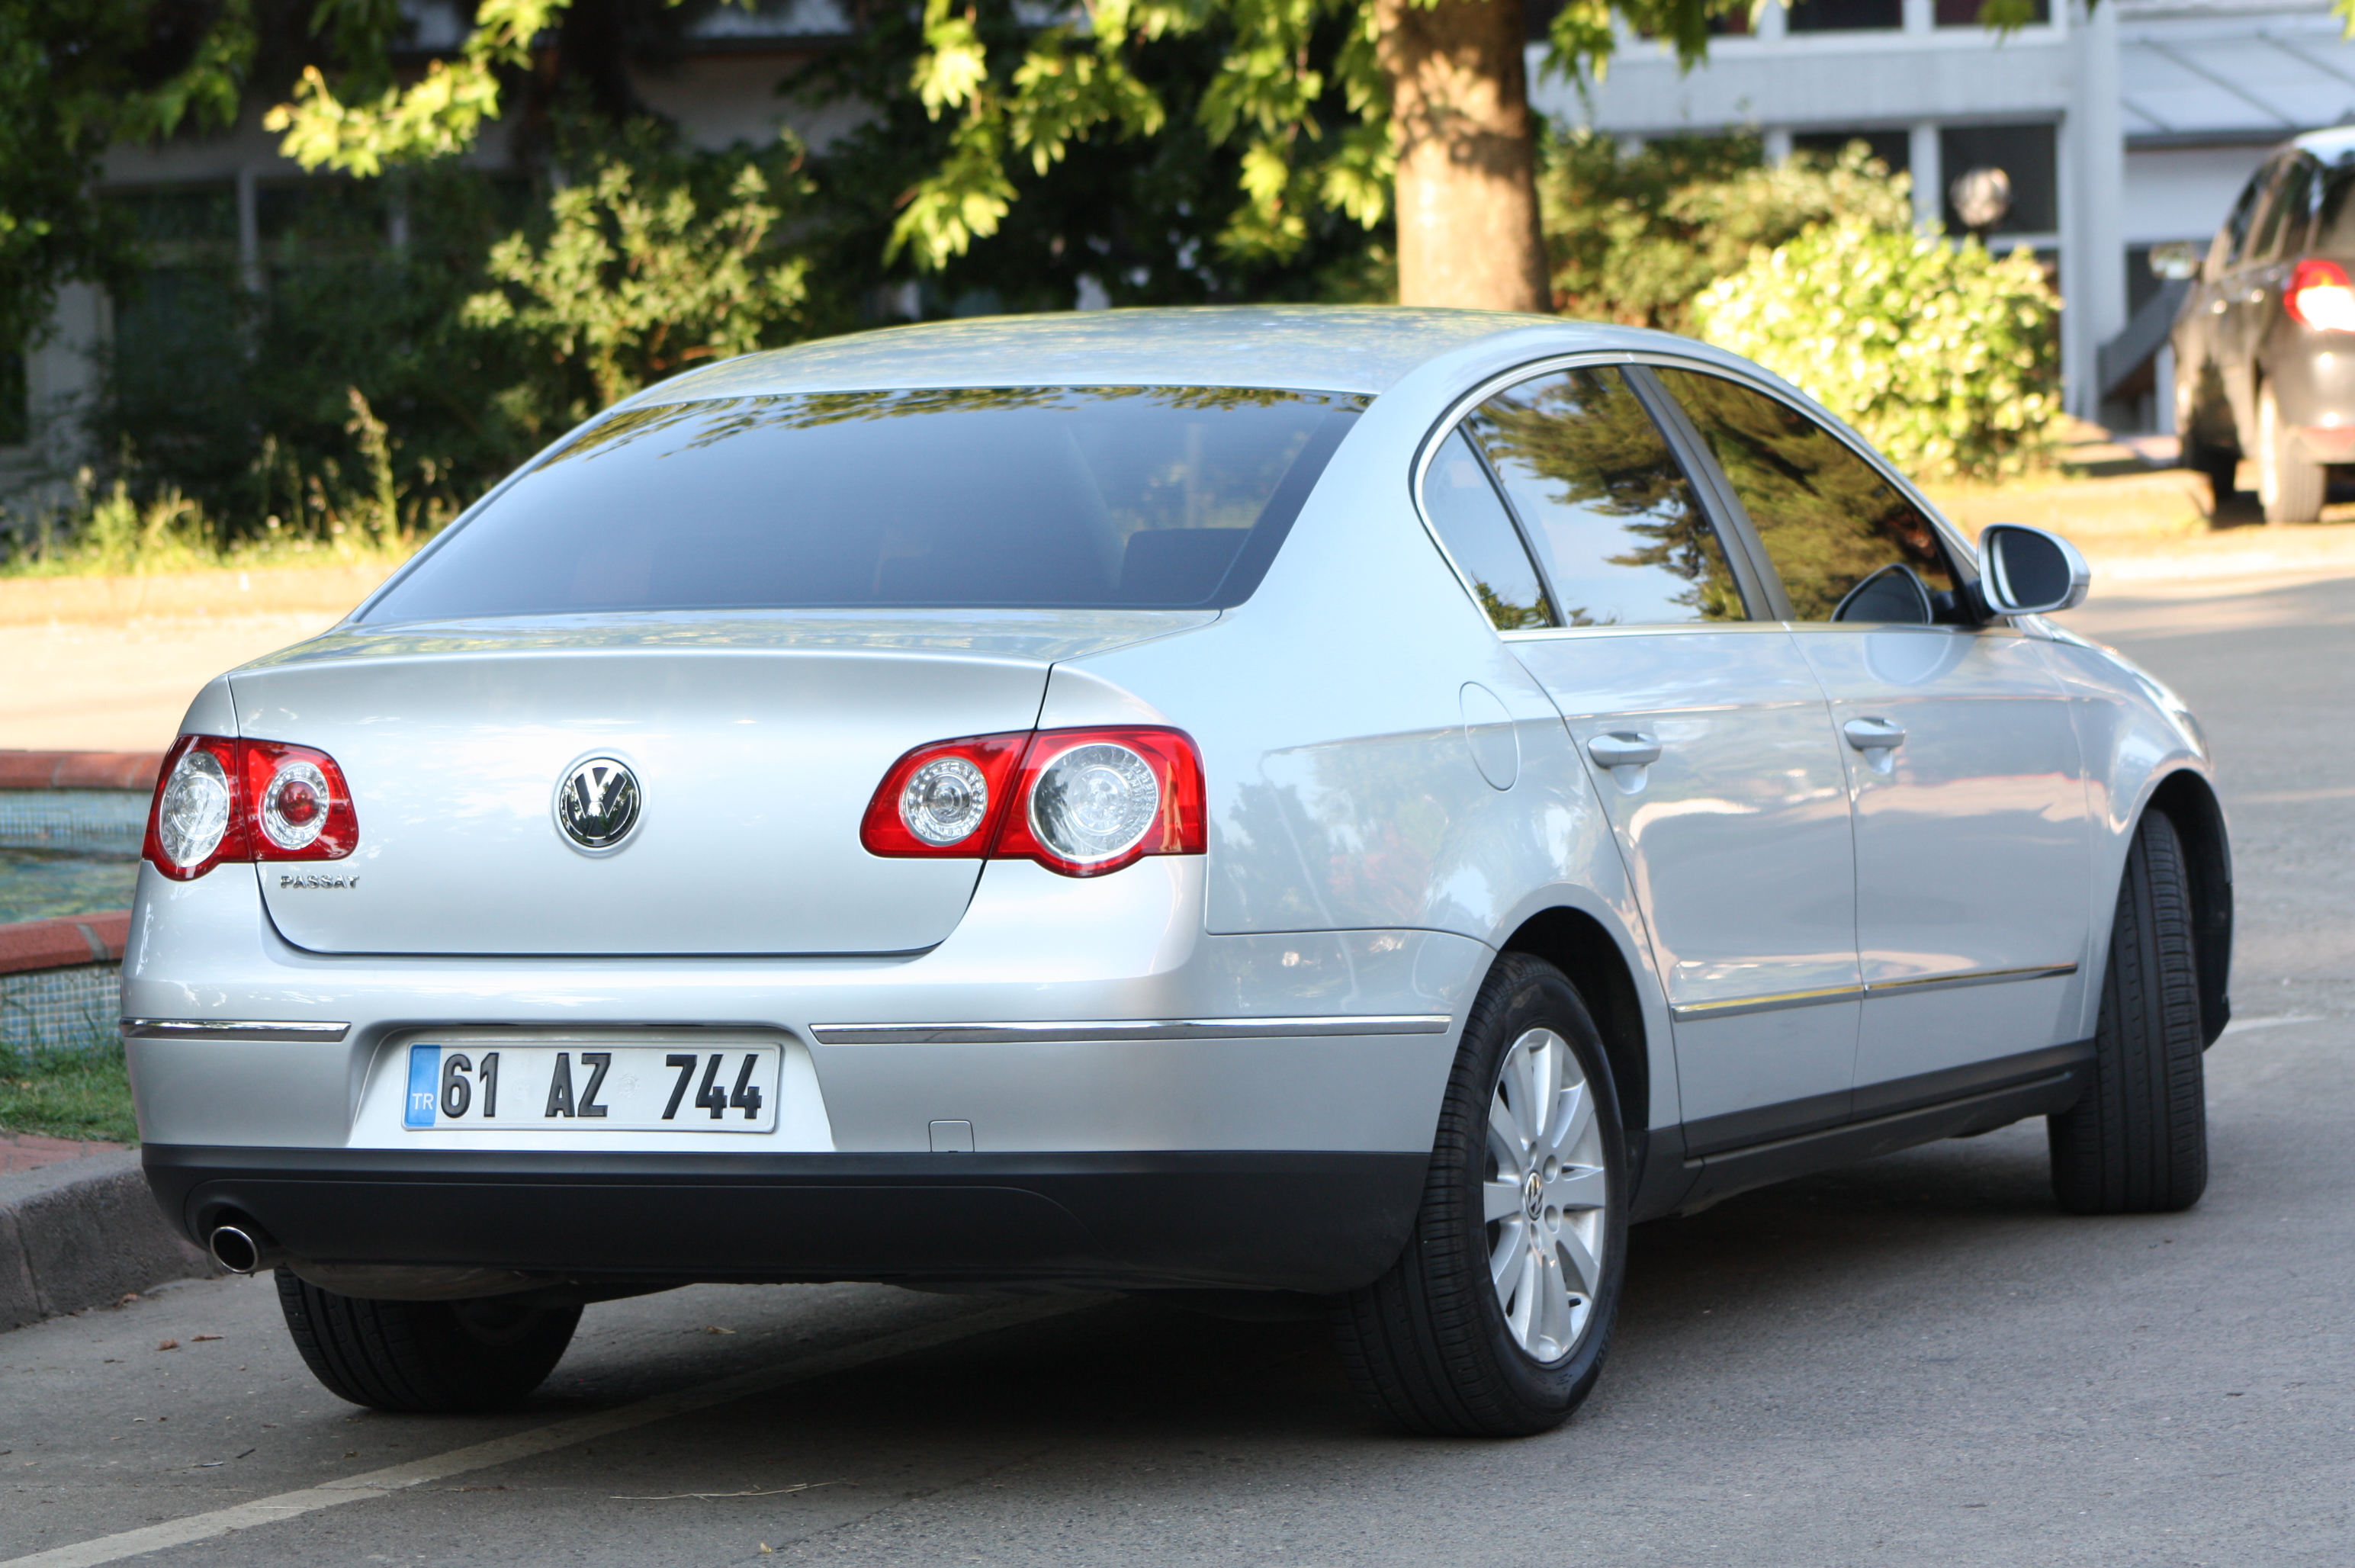 File:2006-2010 Volkswagen Passat (3C) sedan (2011-07-17) 02.jpg - Wikipedia